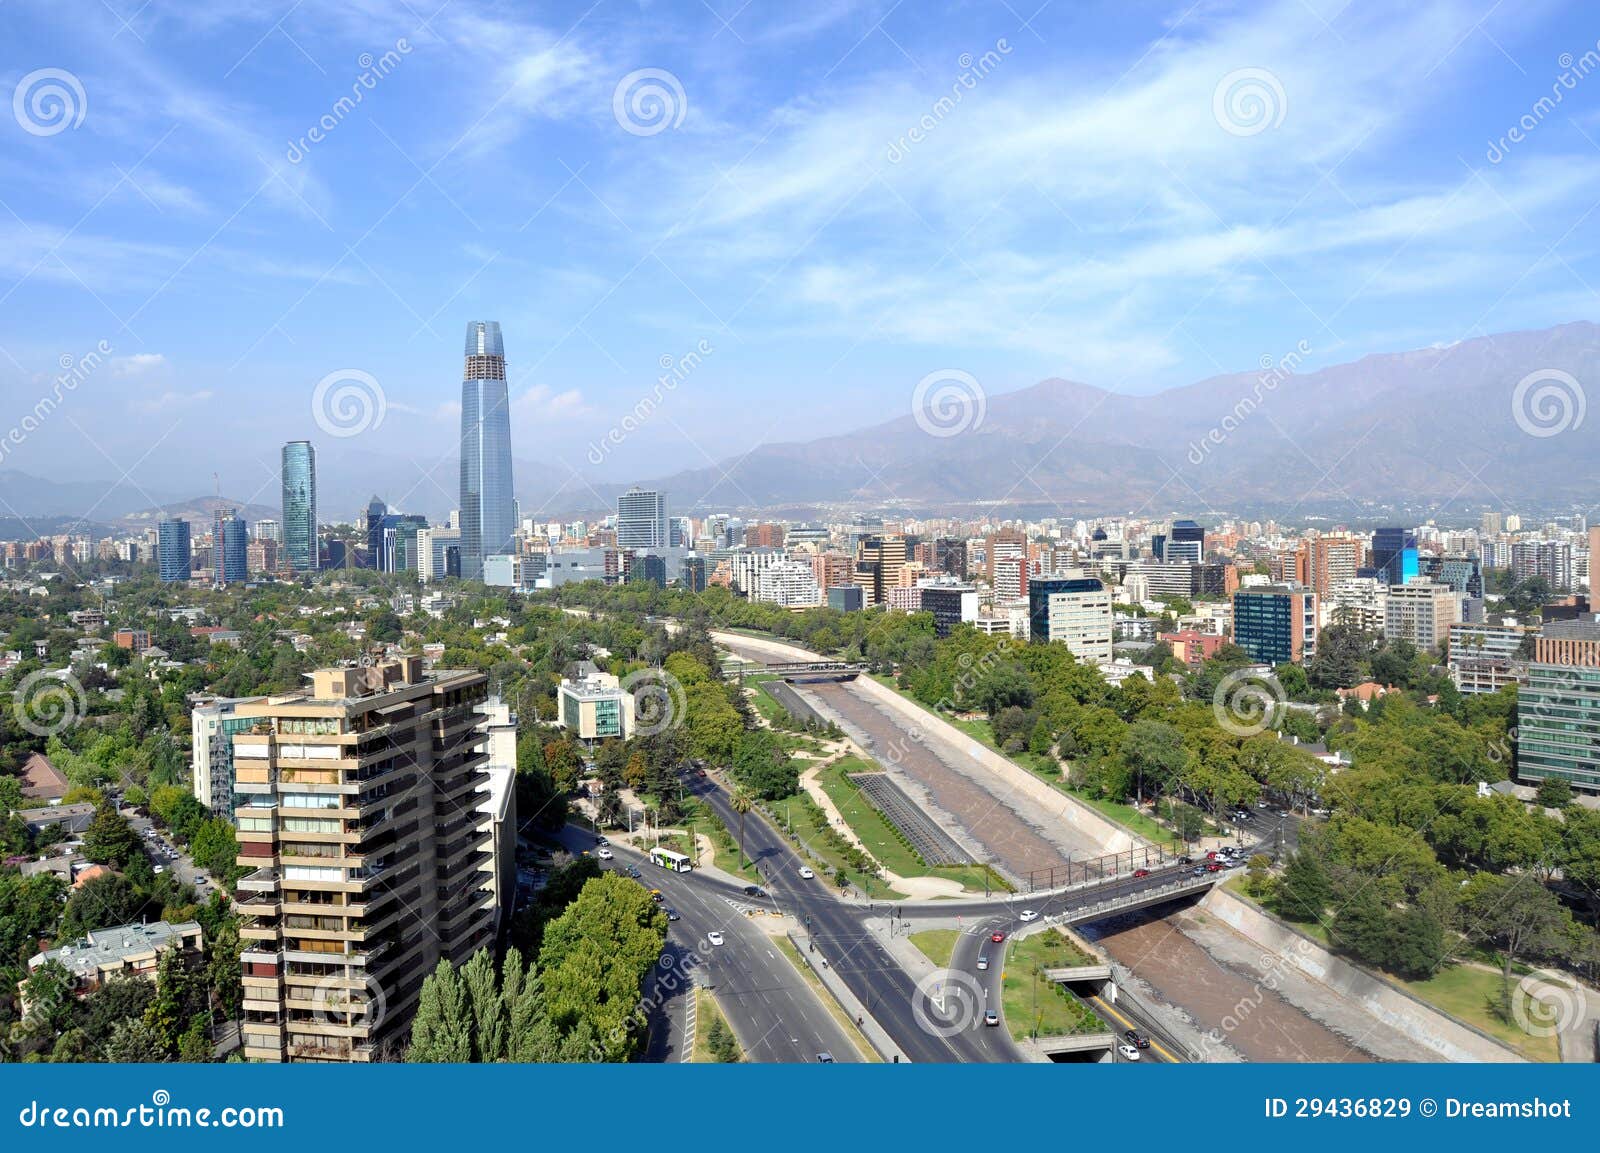 画廊 智利首都圣地亚哥城市导览：41 个建筑 - 2